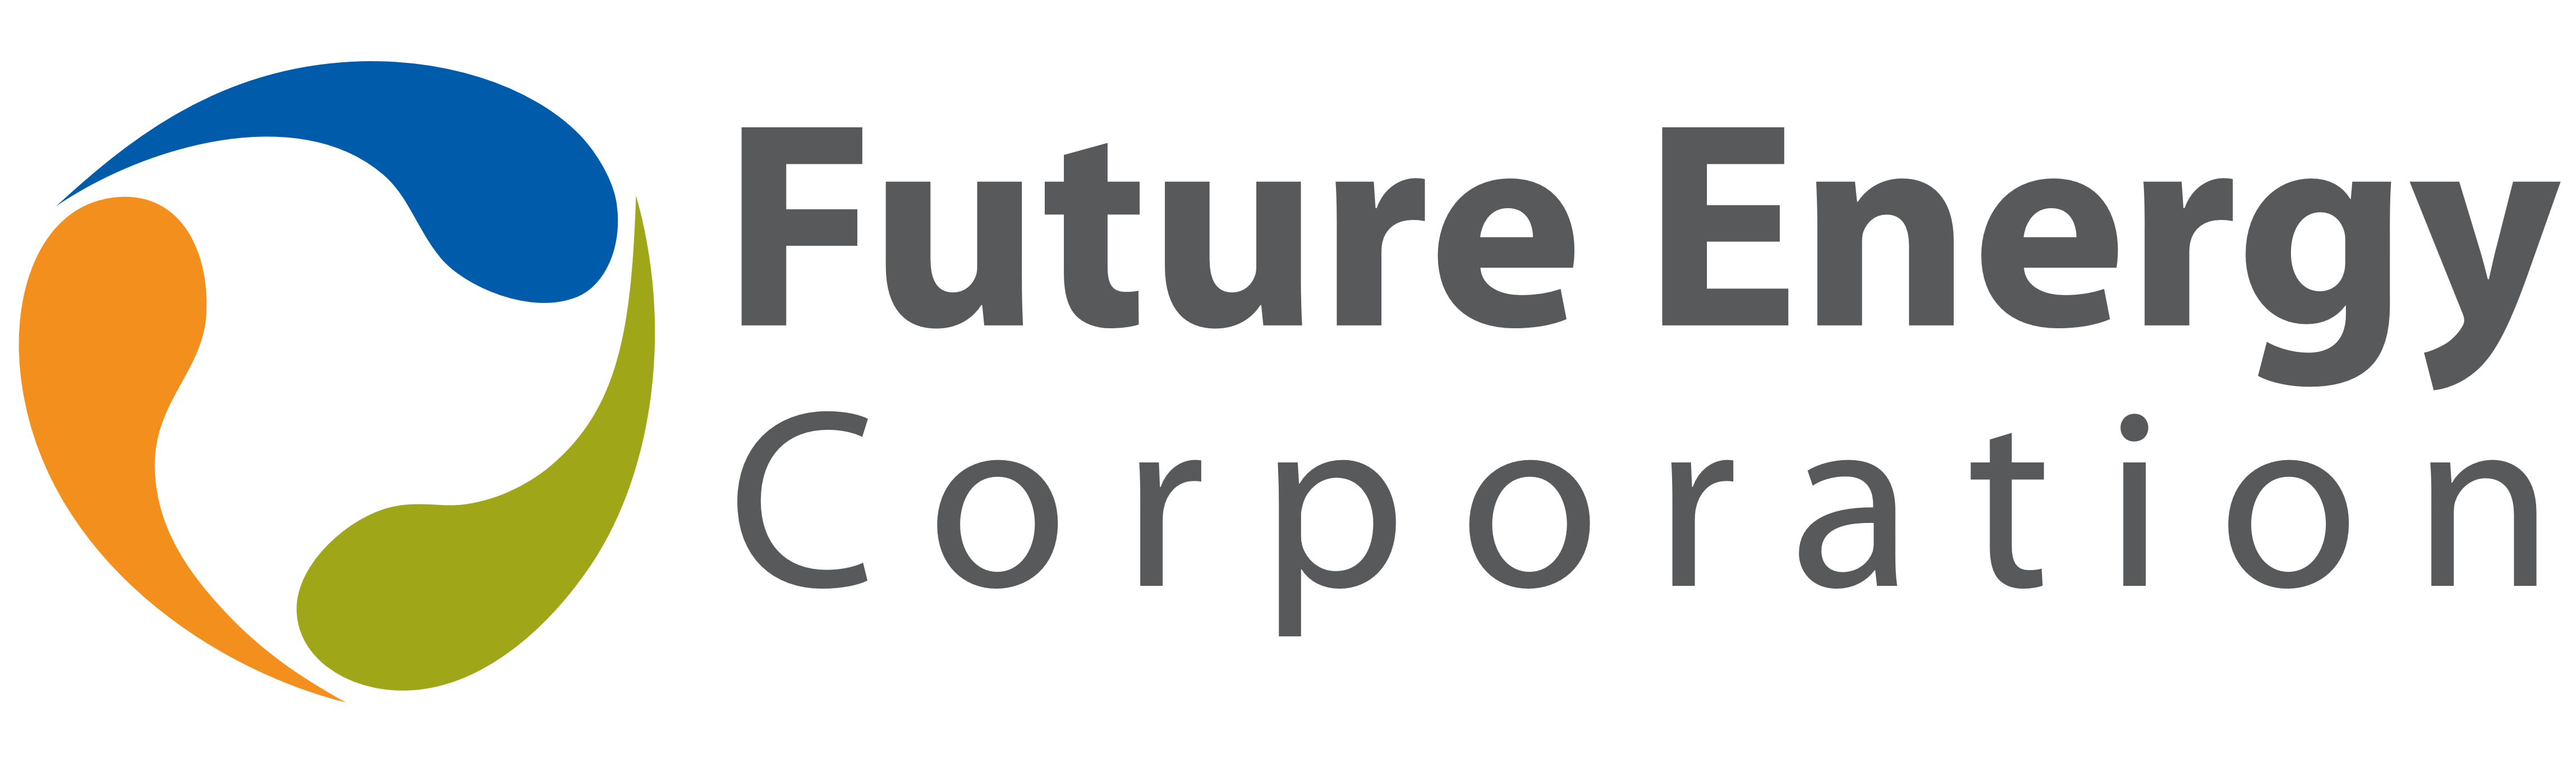 Future Energy Corporation logo, logotype